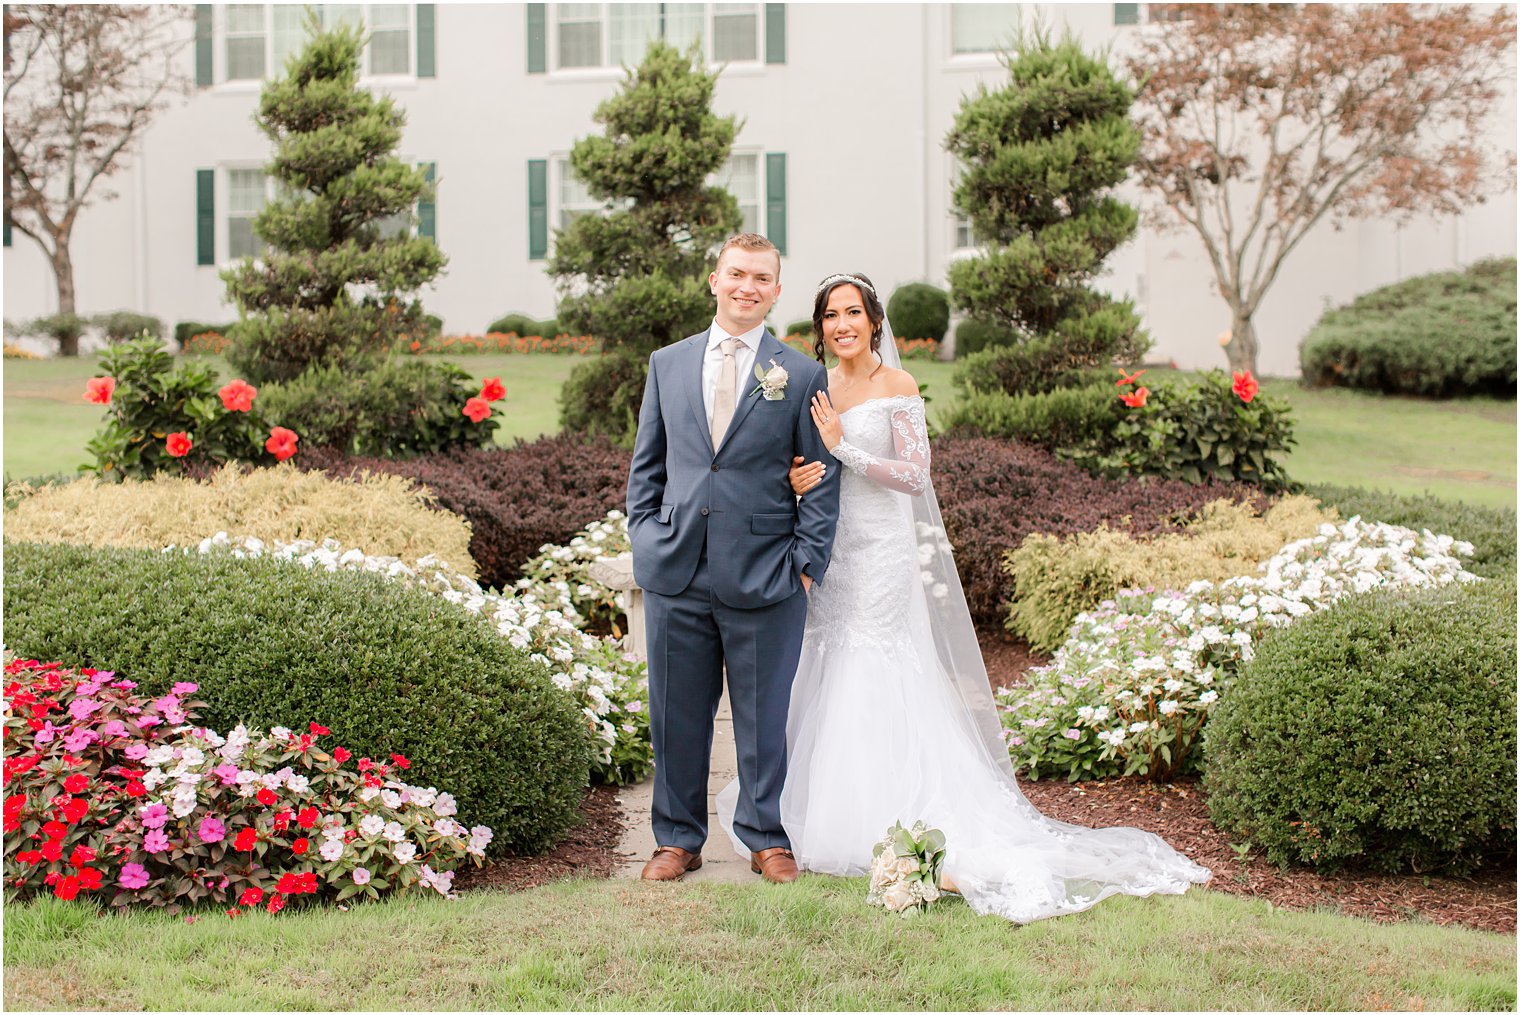 Seaview Hotel wedding portraits of bride and groom in garden